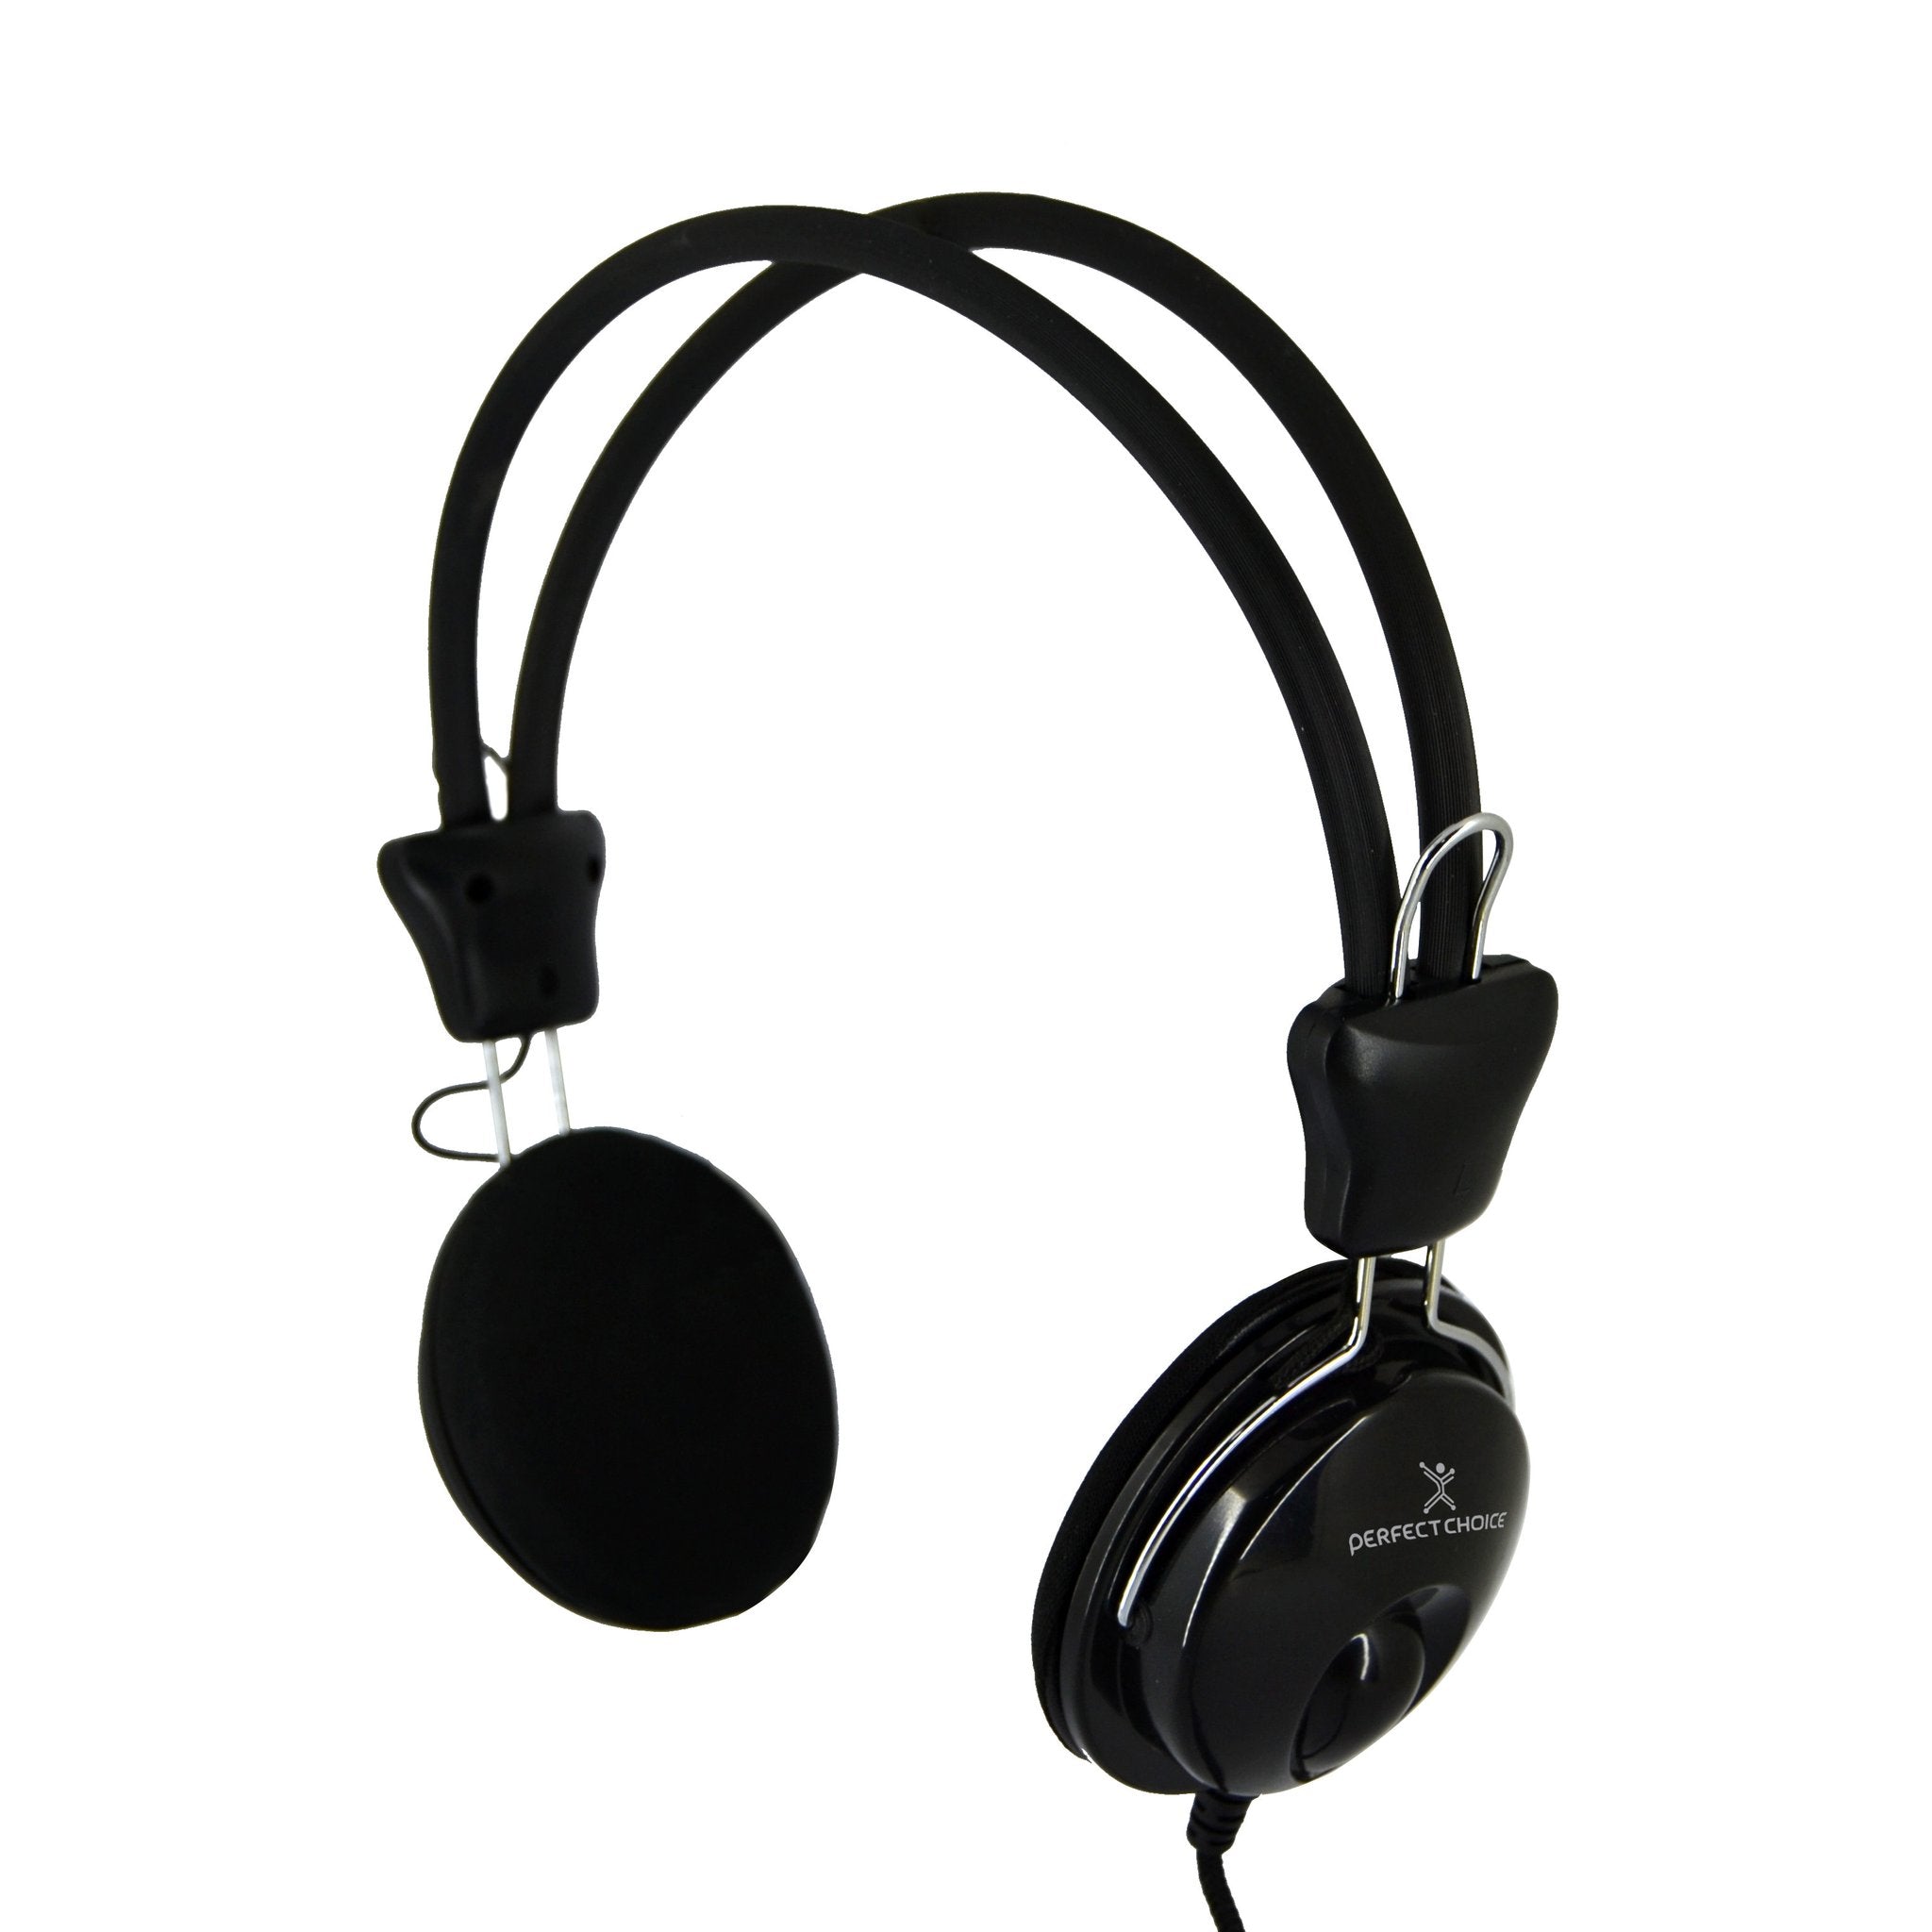 Auriculares Diadema Cable con micrófono integrado